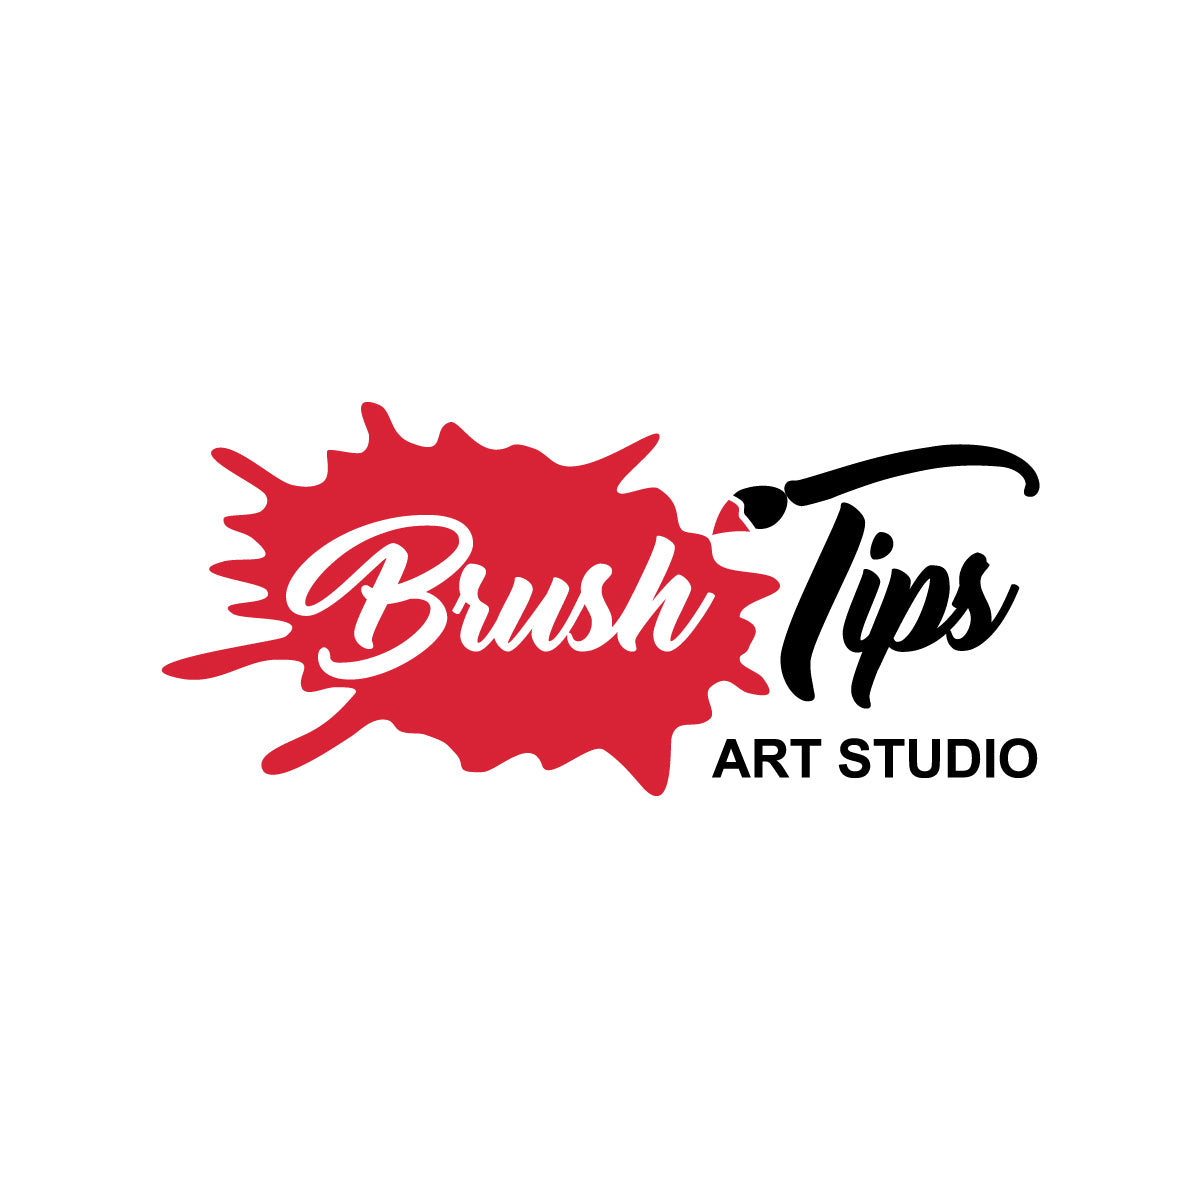 BRUSH TIPS ART STUDIO: PAINT N' SIP & KID ART CLASSES – Brush Tips Art  Studio